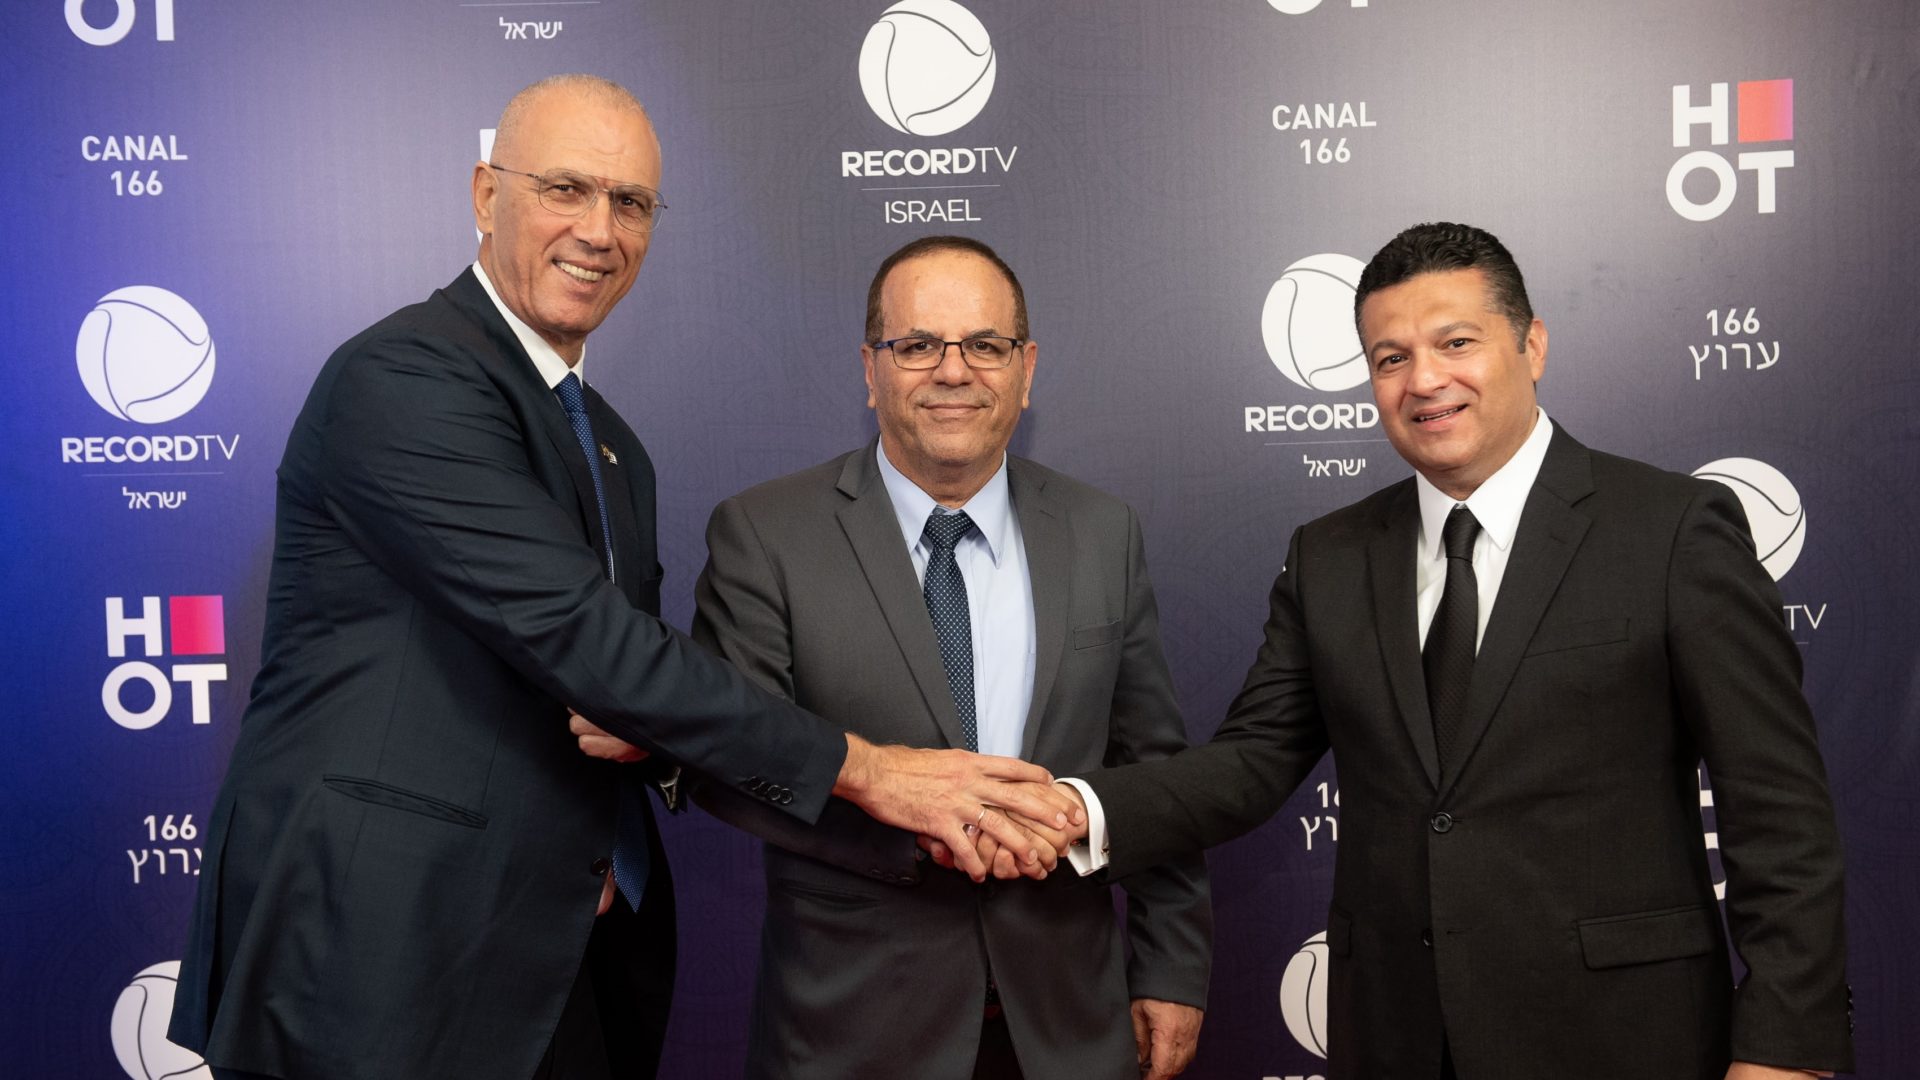 Da esquerda para a direita: Yossi Shelley, Embaixador de Israel no Brasil; Ayoob Kara, Ministro das Comunicações de Israel; e Marcelo Cardoso, CEO da Record TV Internacional